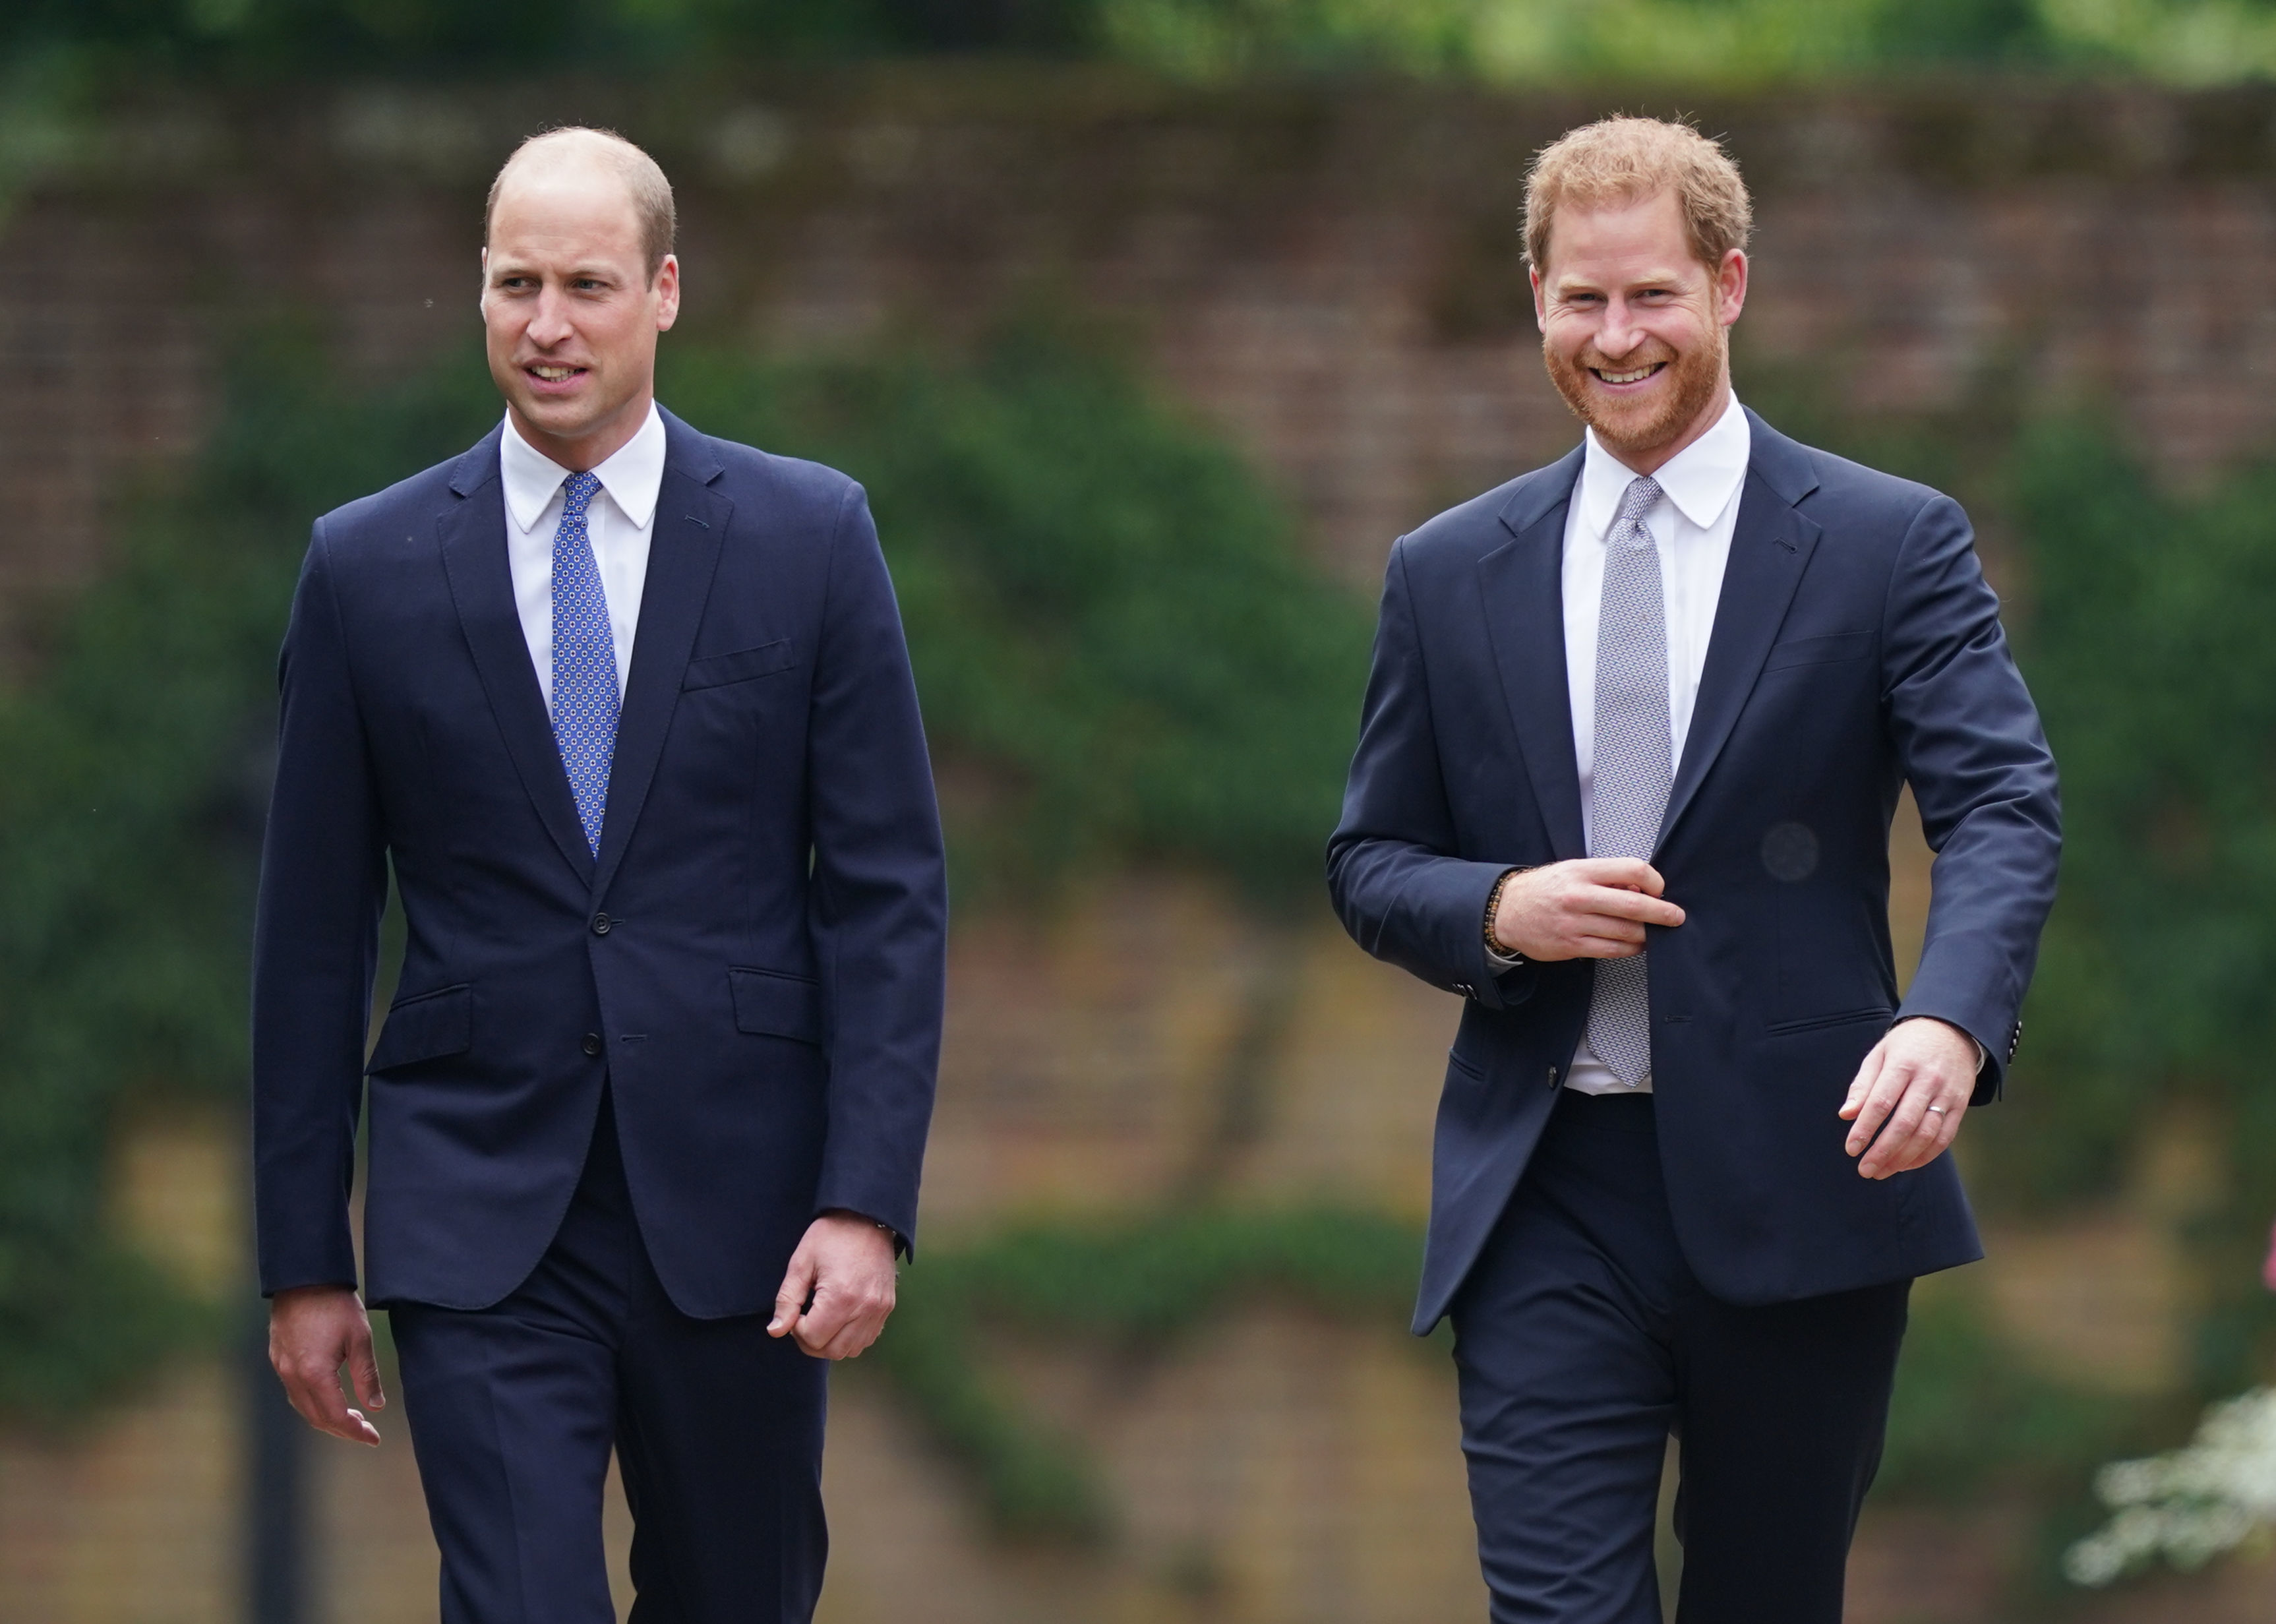 Le prince William et le prince Harry arrivent pour l'inauguration d'une statue dans le Sunken Garden du palais de Kensington, le 1er juillet 2021 à Londres, en Angleterre. | Source : Getty Images